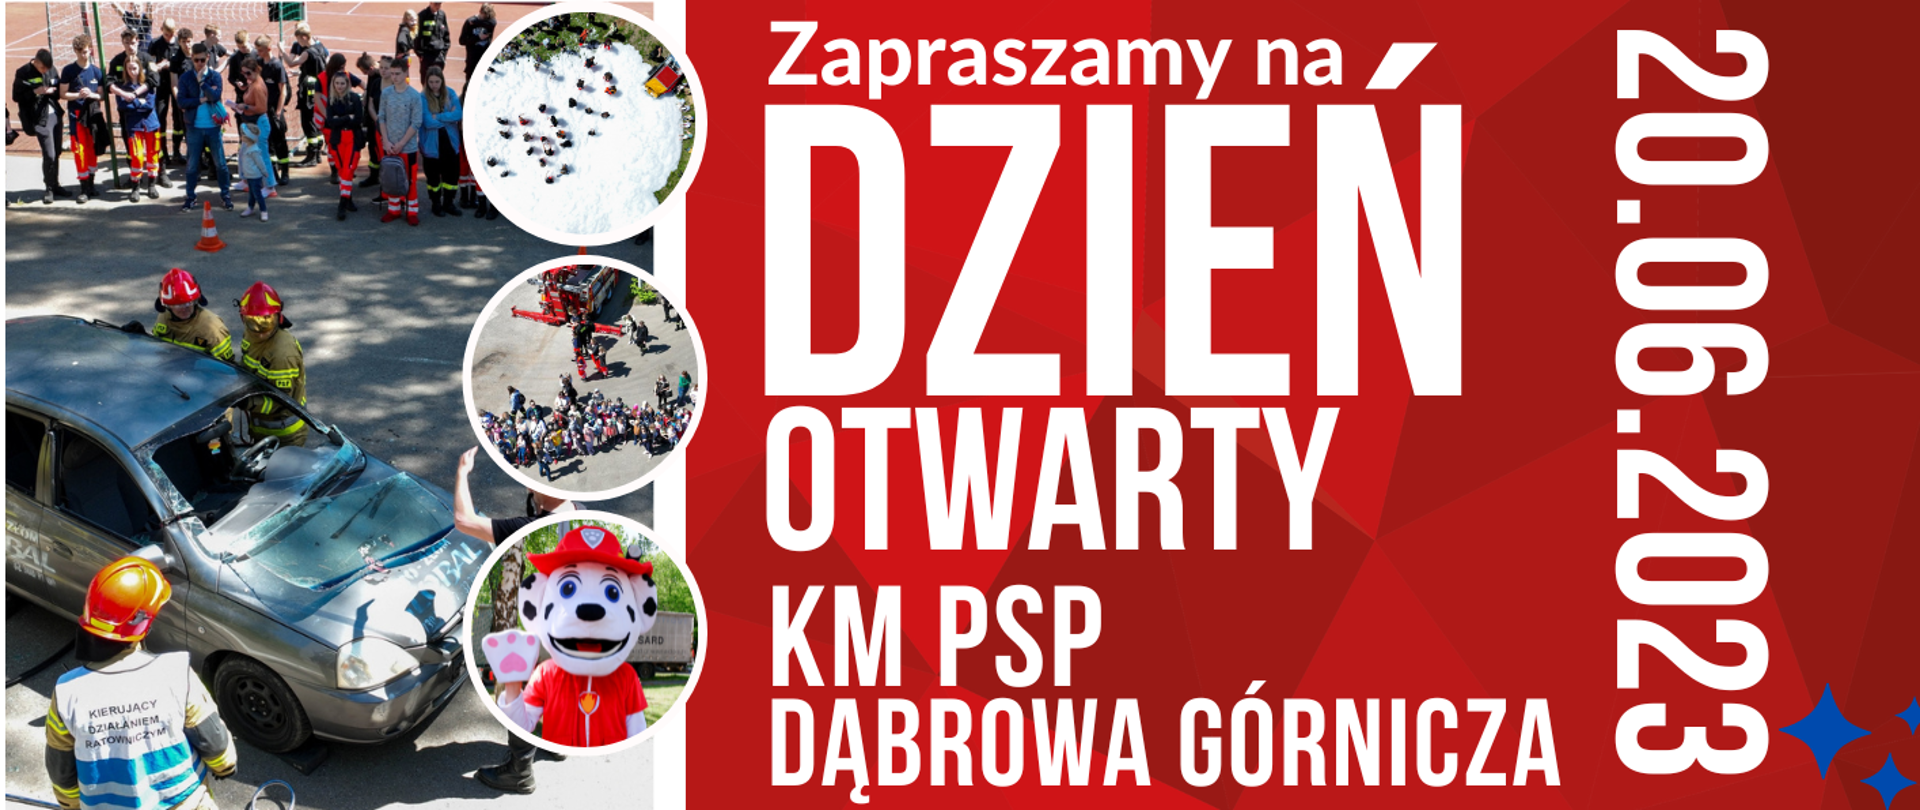 Dzień otwarty w KM PSP Dąbrowa Górnicza